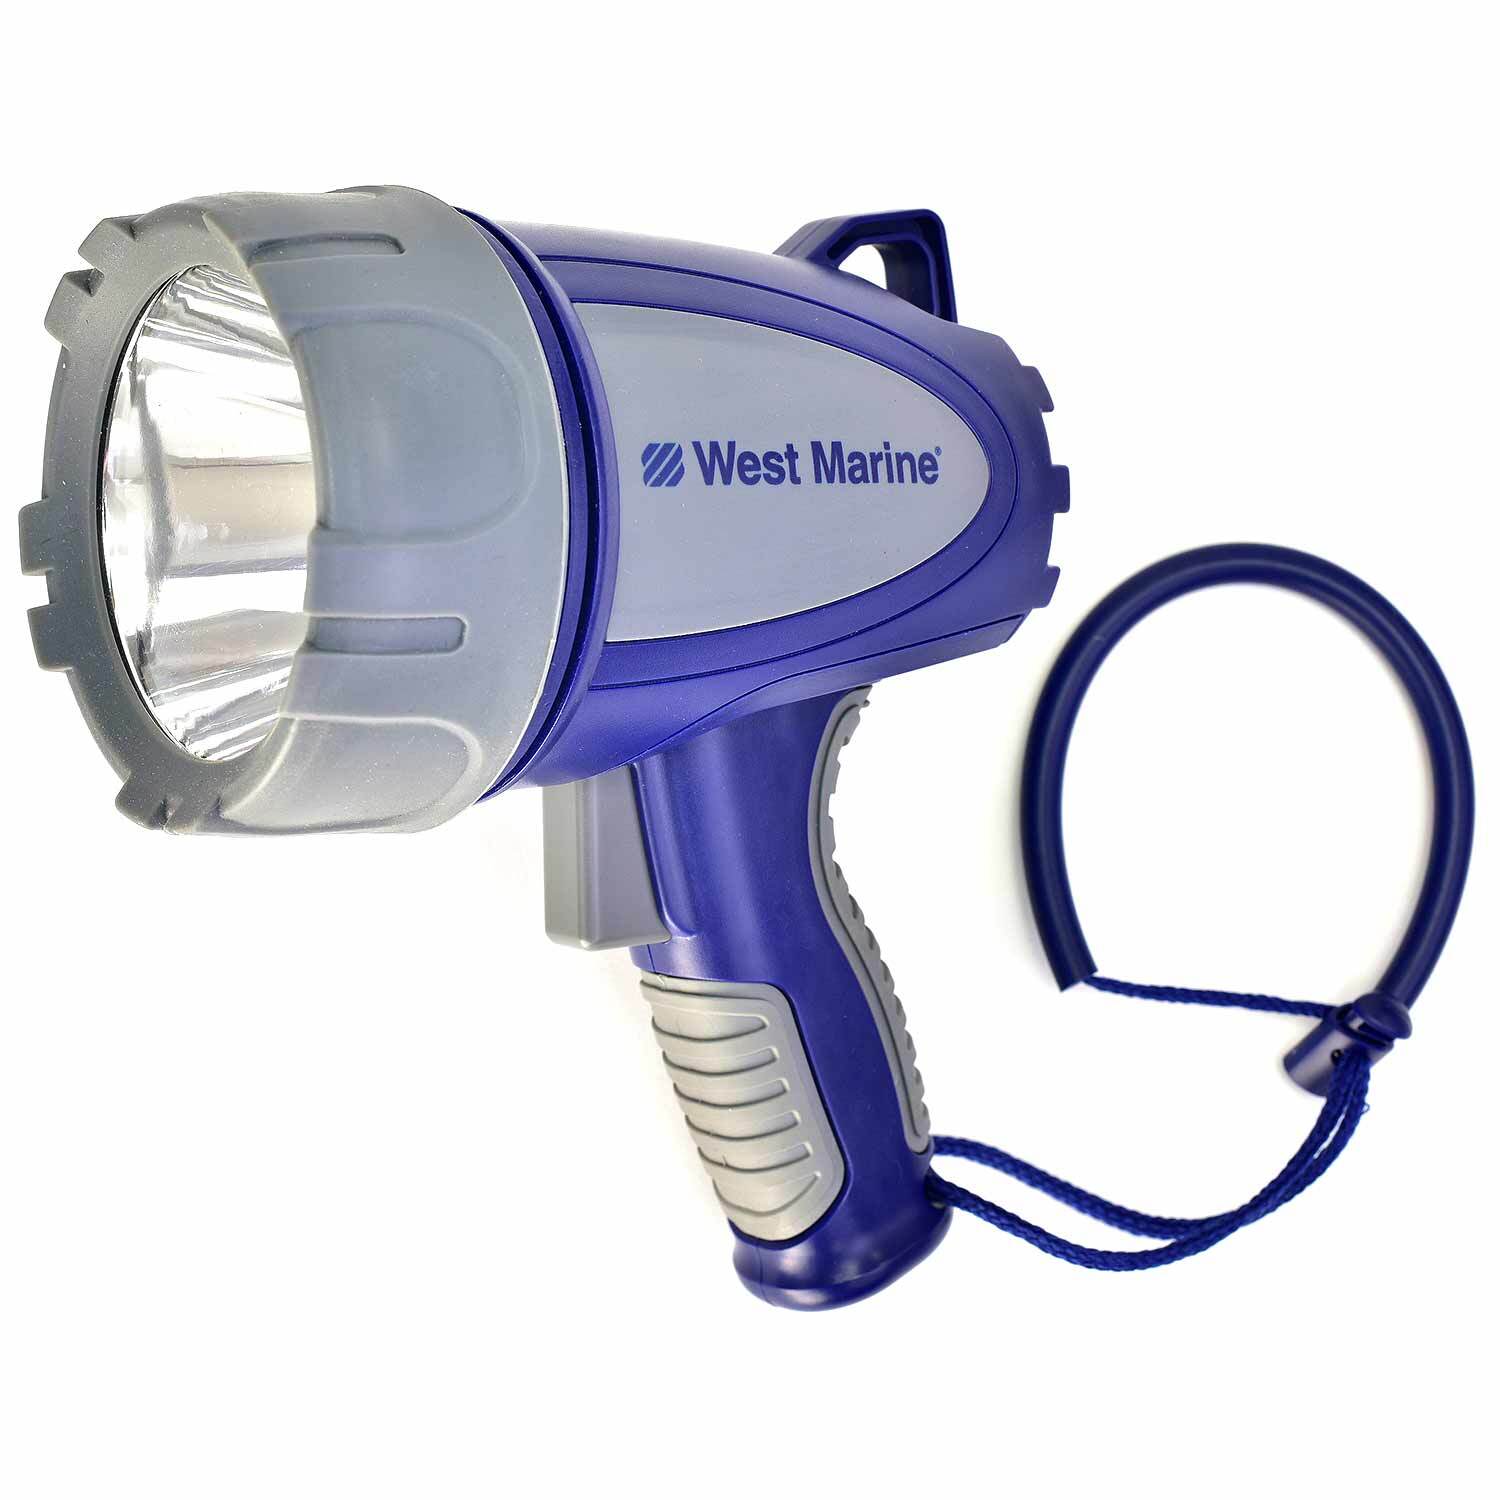 WEST MARINE Waterproof 650 Lumen Rechargeable LED Spotlight